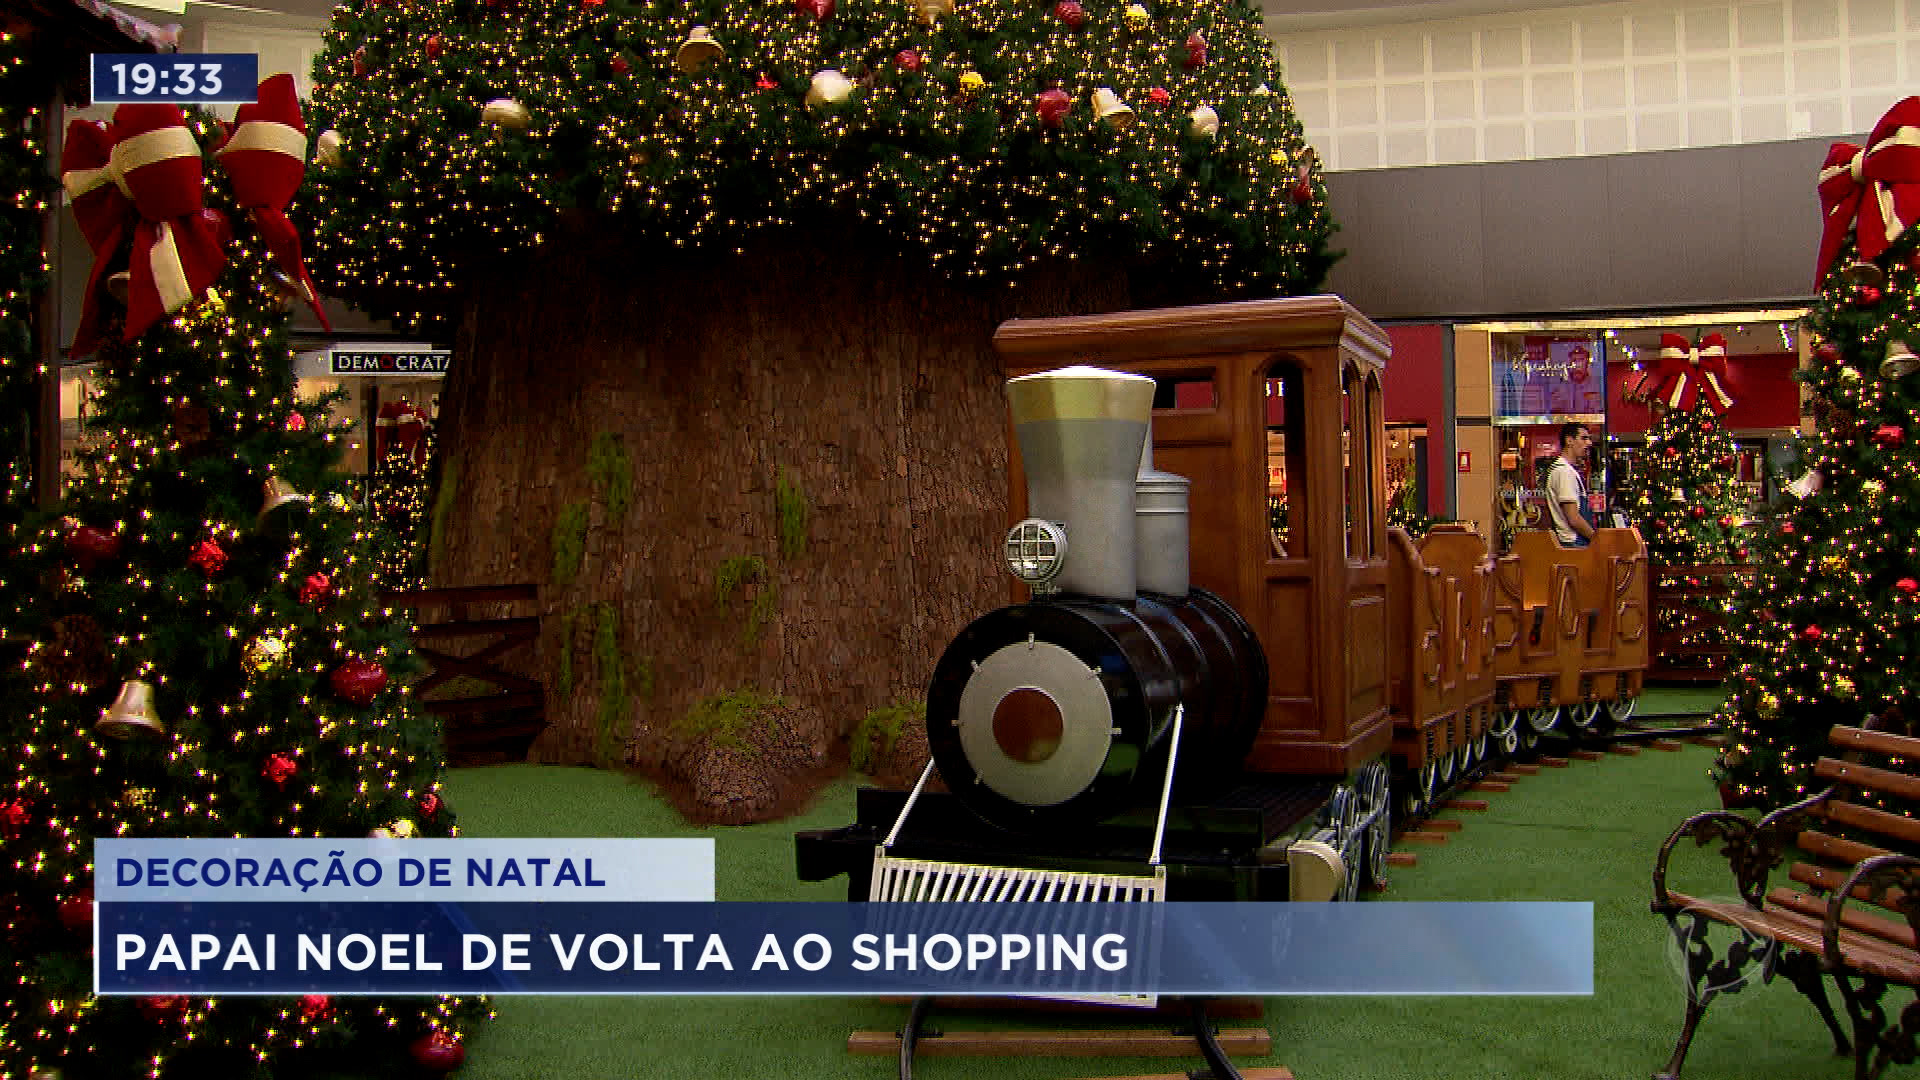 Vídeo: Shopping de São José inaugura decoração natalina